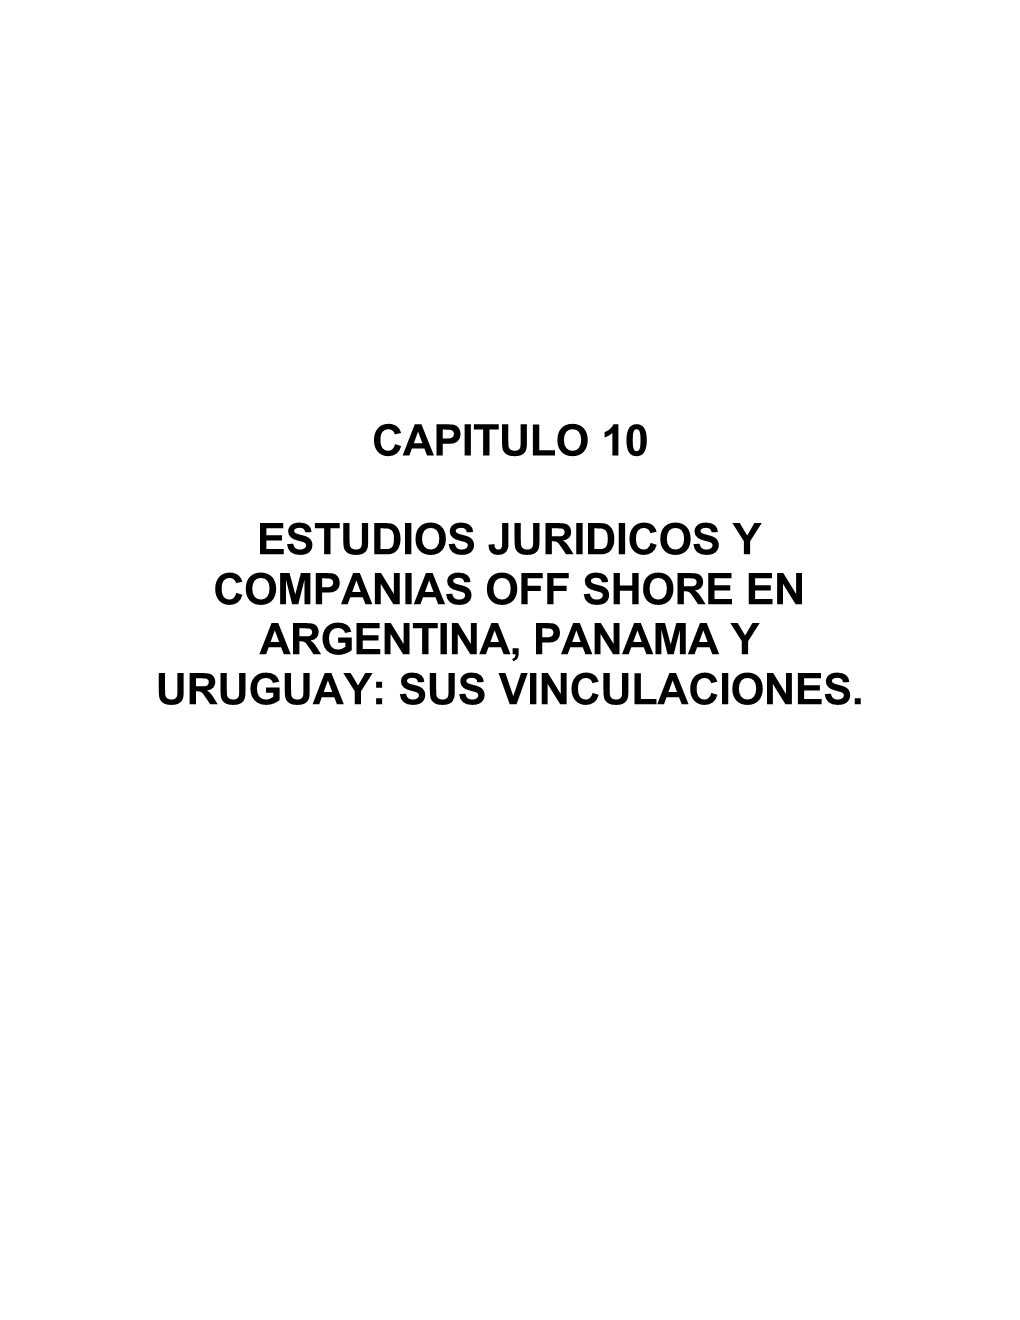 Capitulo 10 Estudios Juridicos Y Companias Off Shore En Argentina